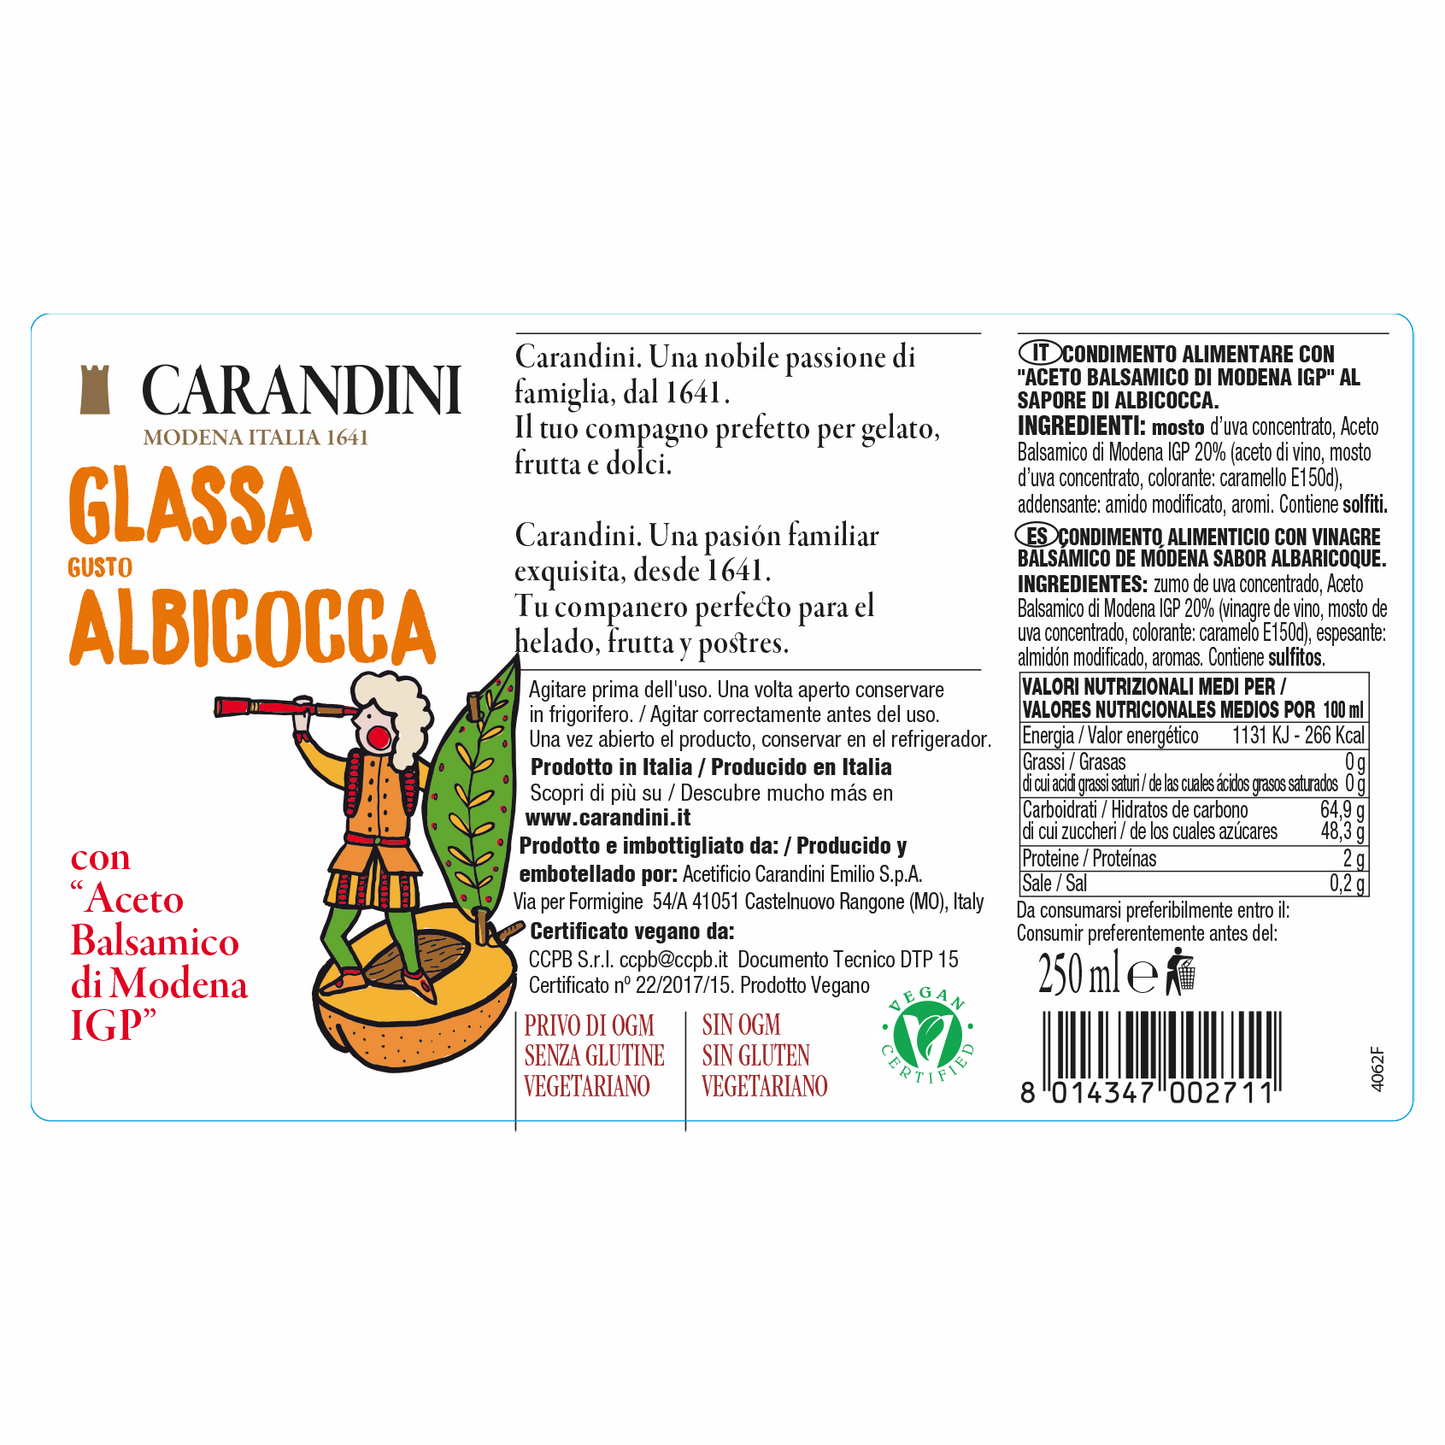 Glassa gusto Albicocca con Aceto Balsamico di Modena IGP